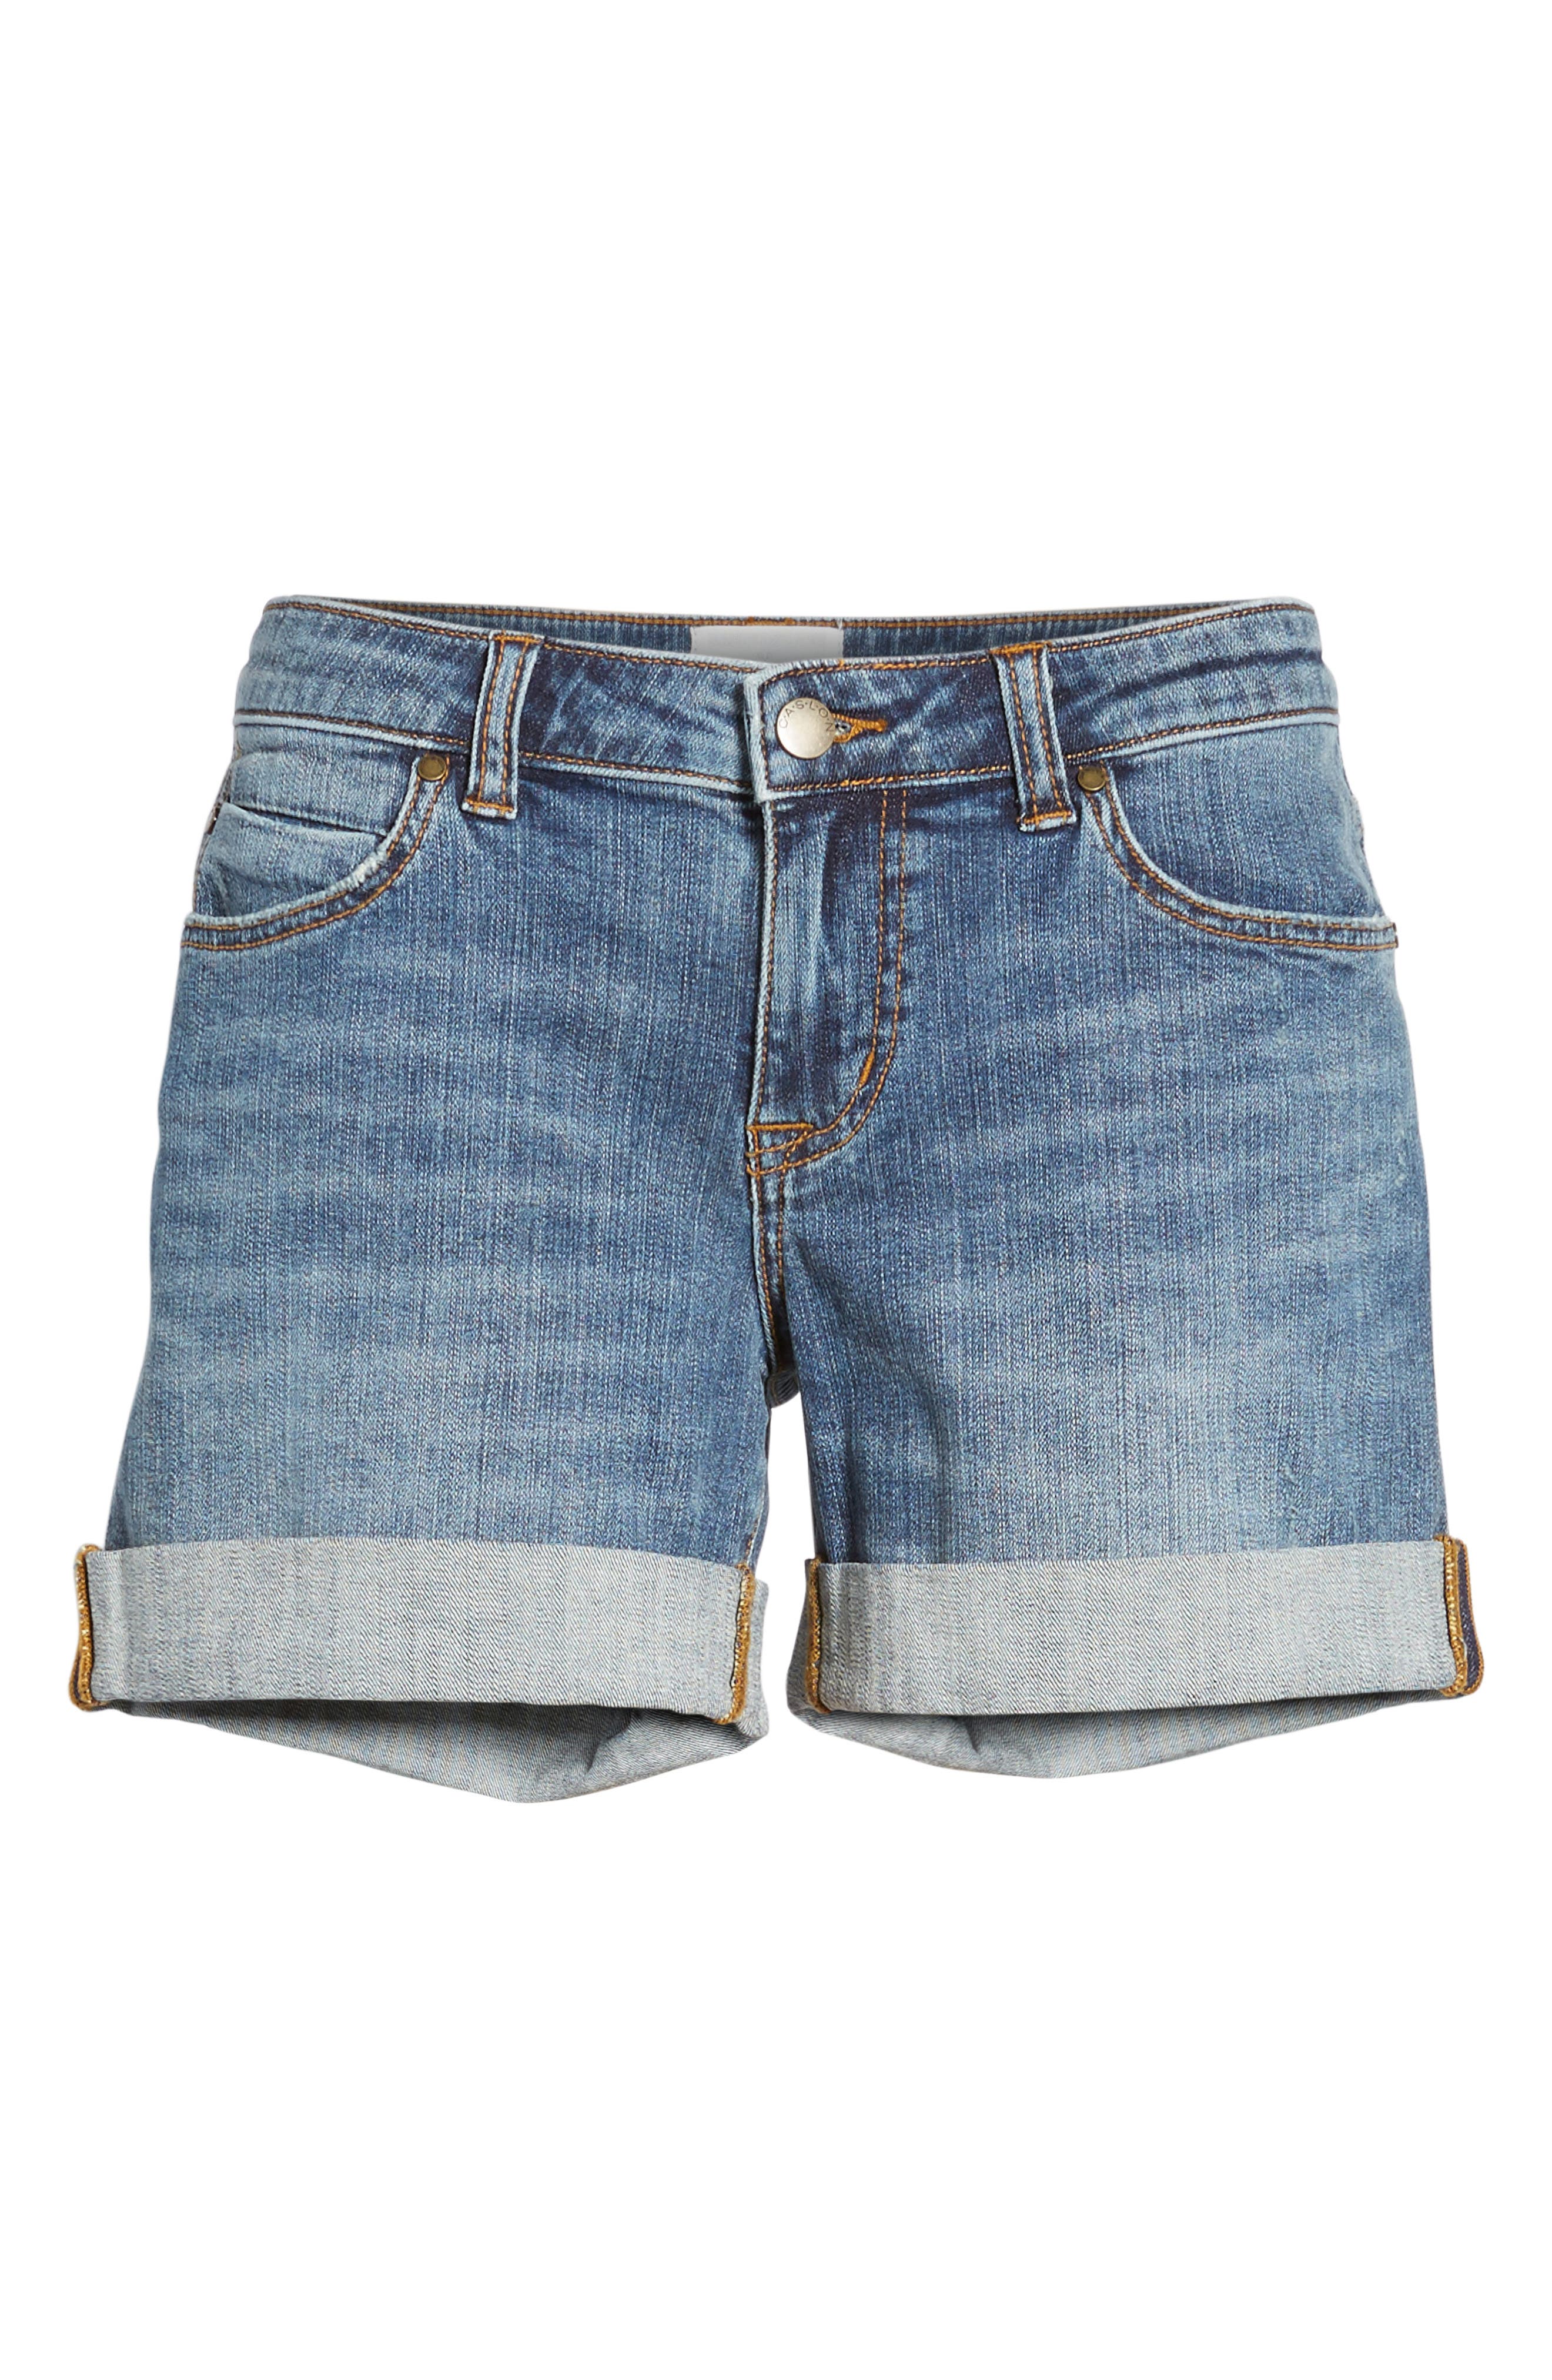 caslon jean shorts